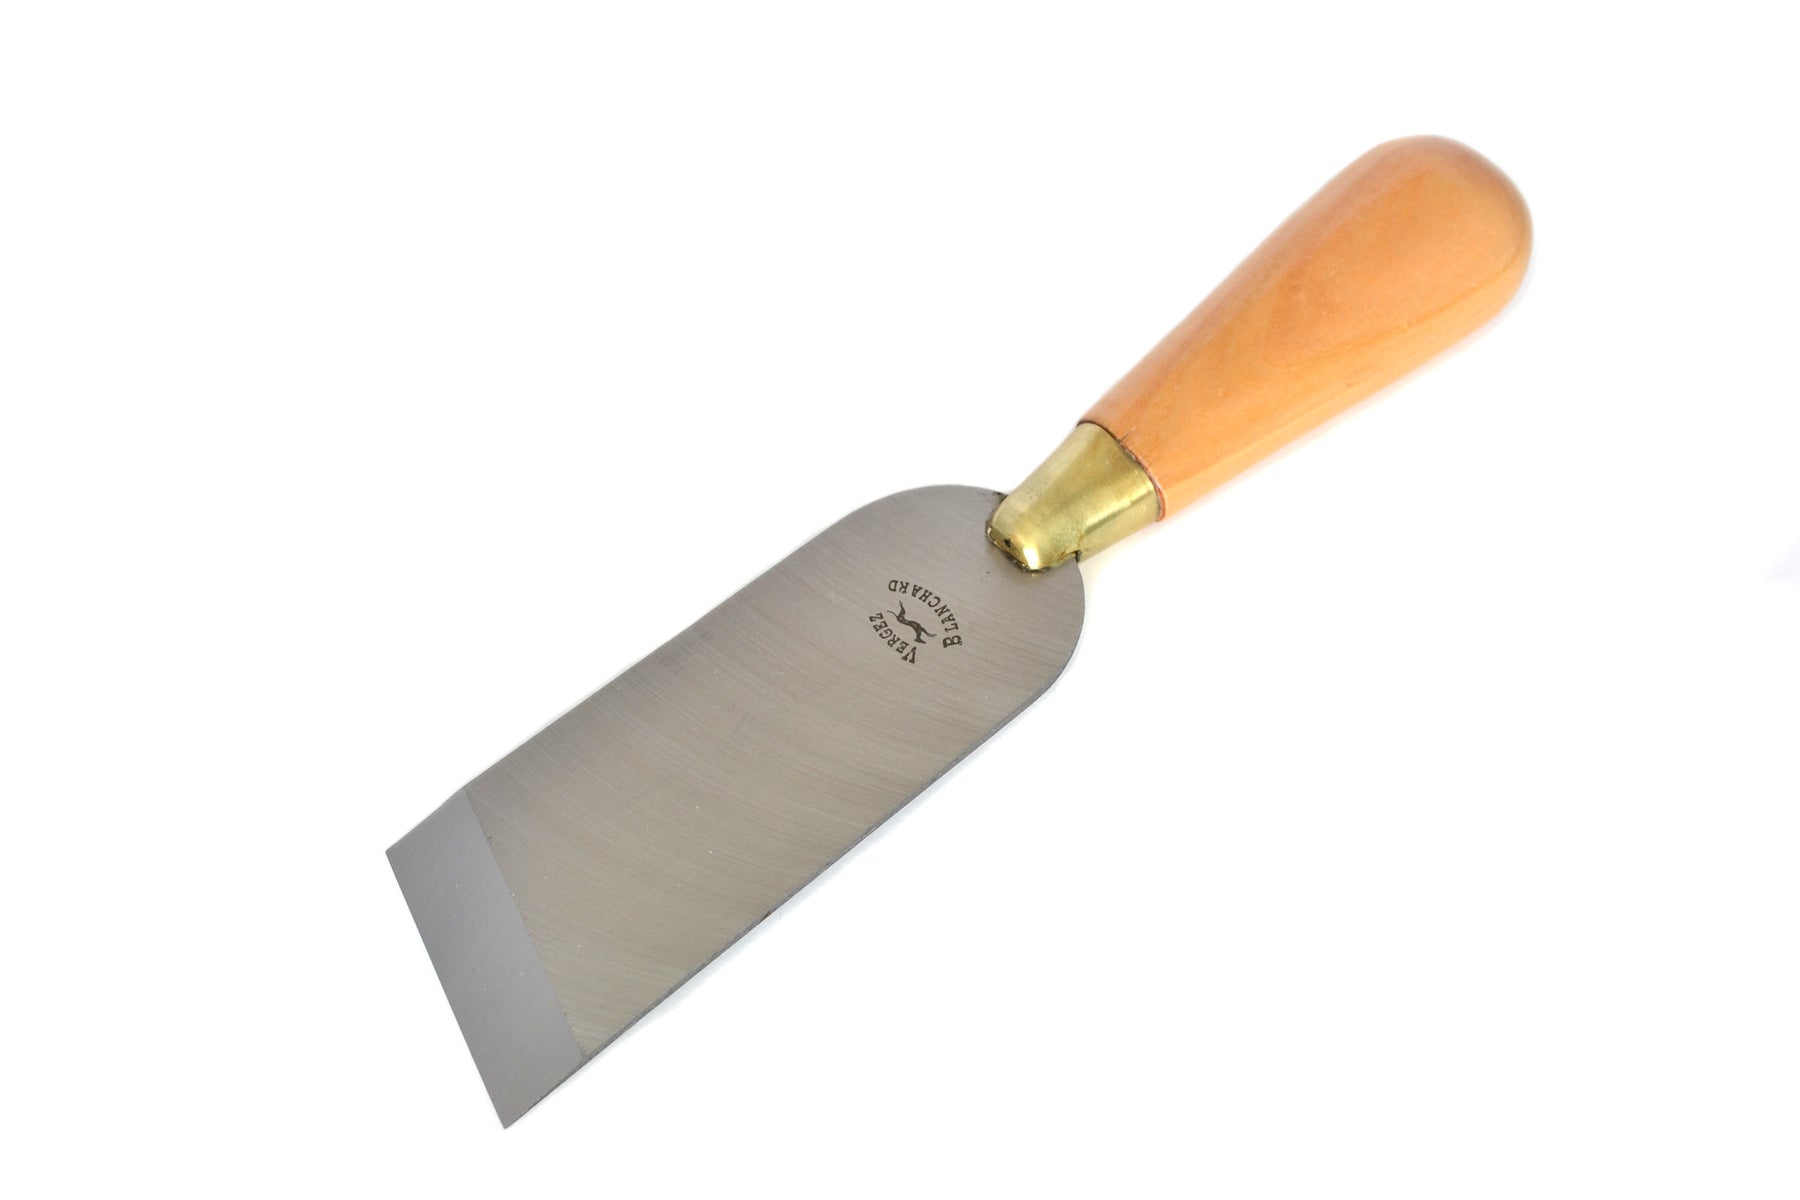 Head round knife, vergez blanchard, craftntools